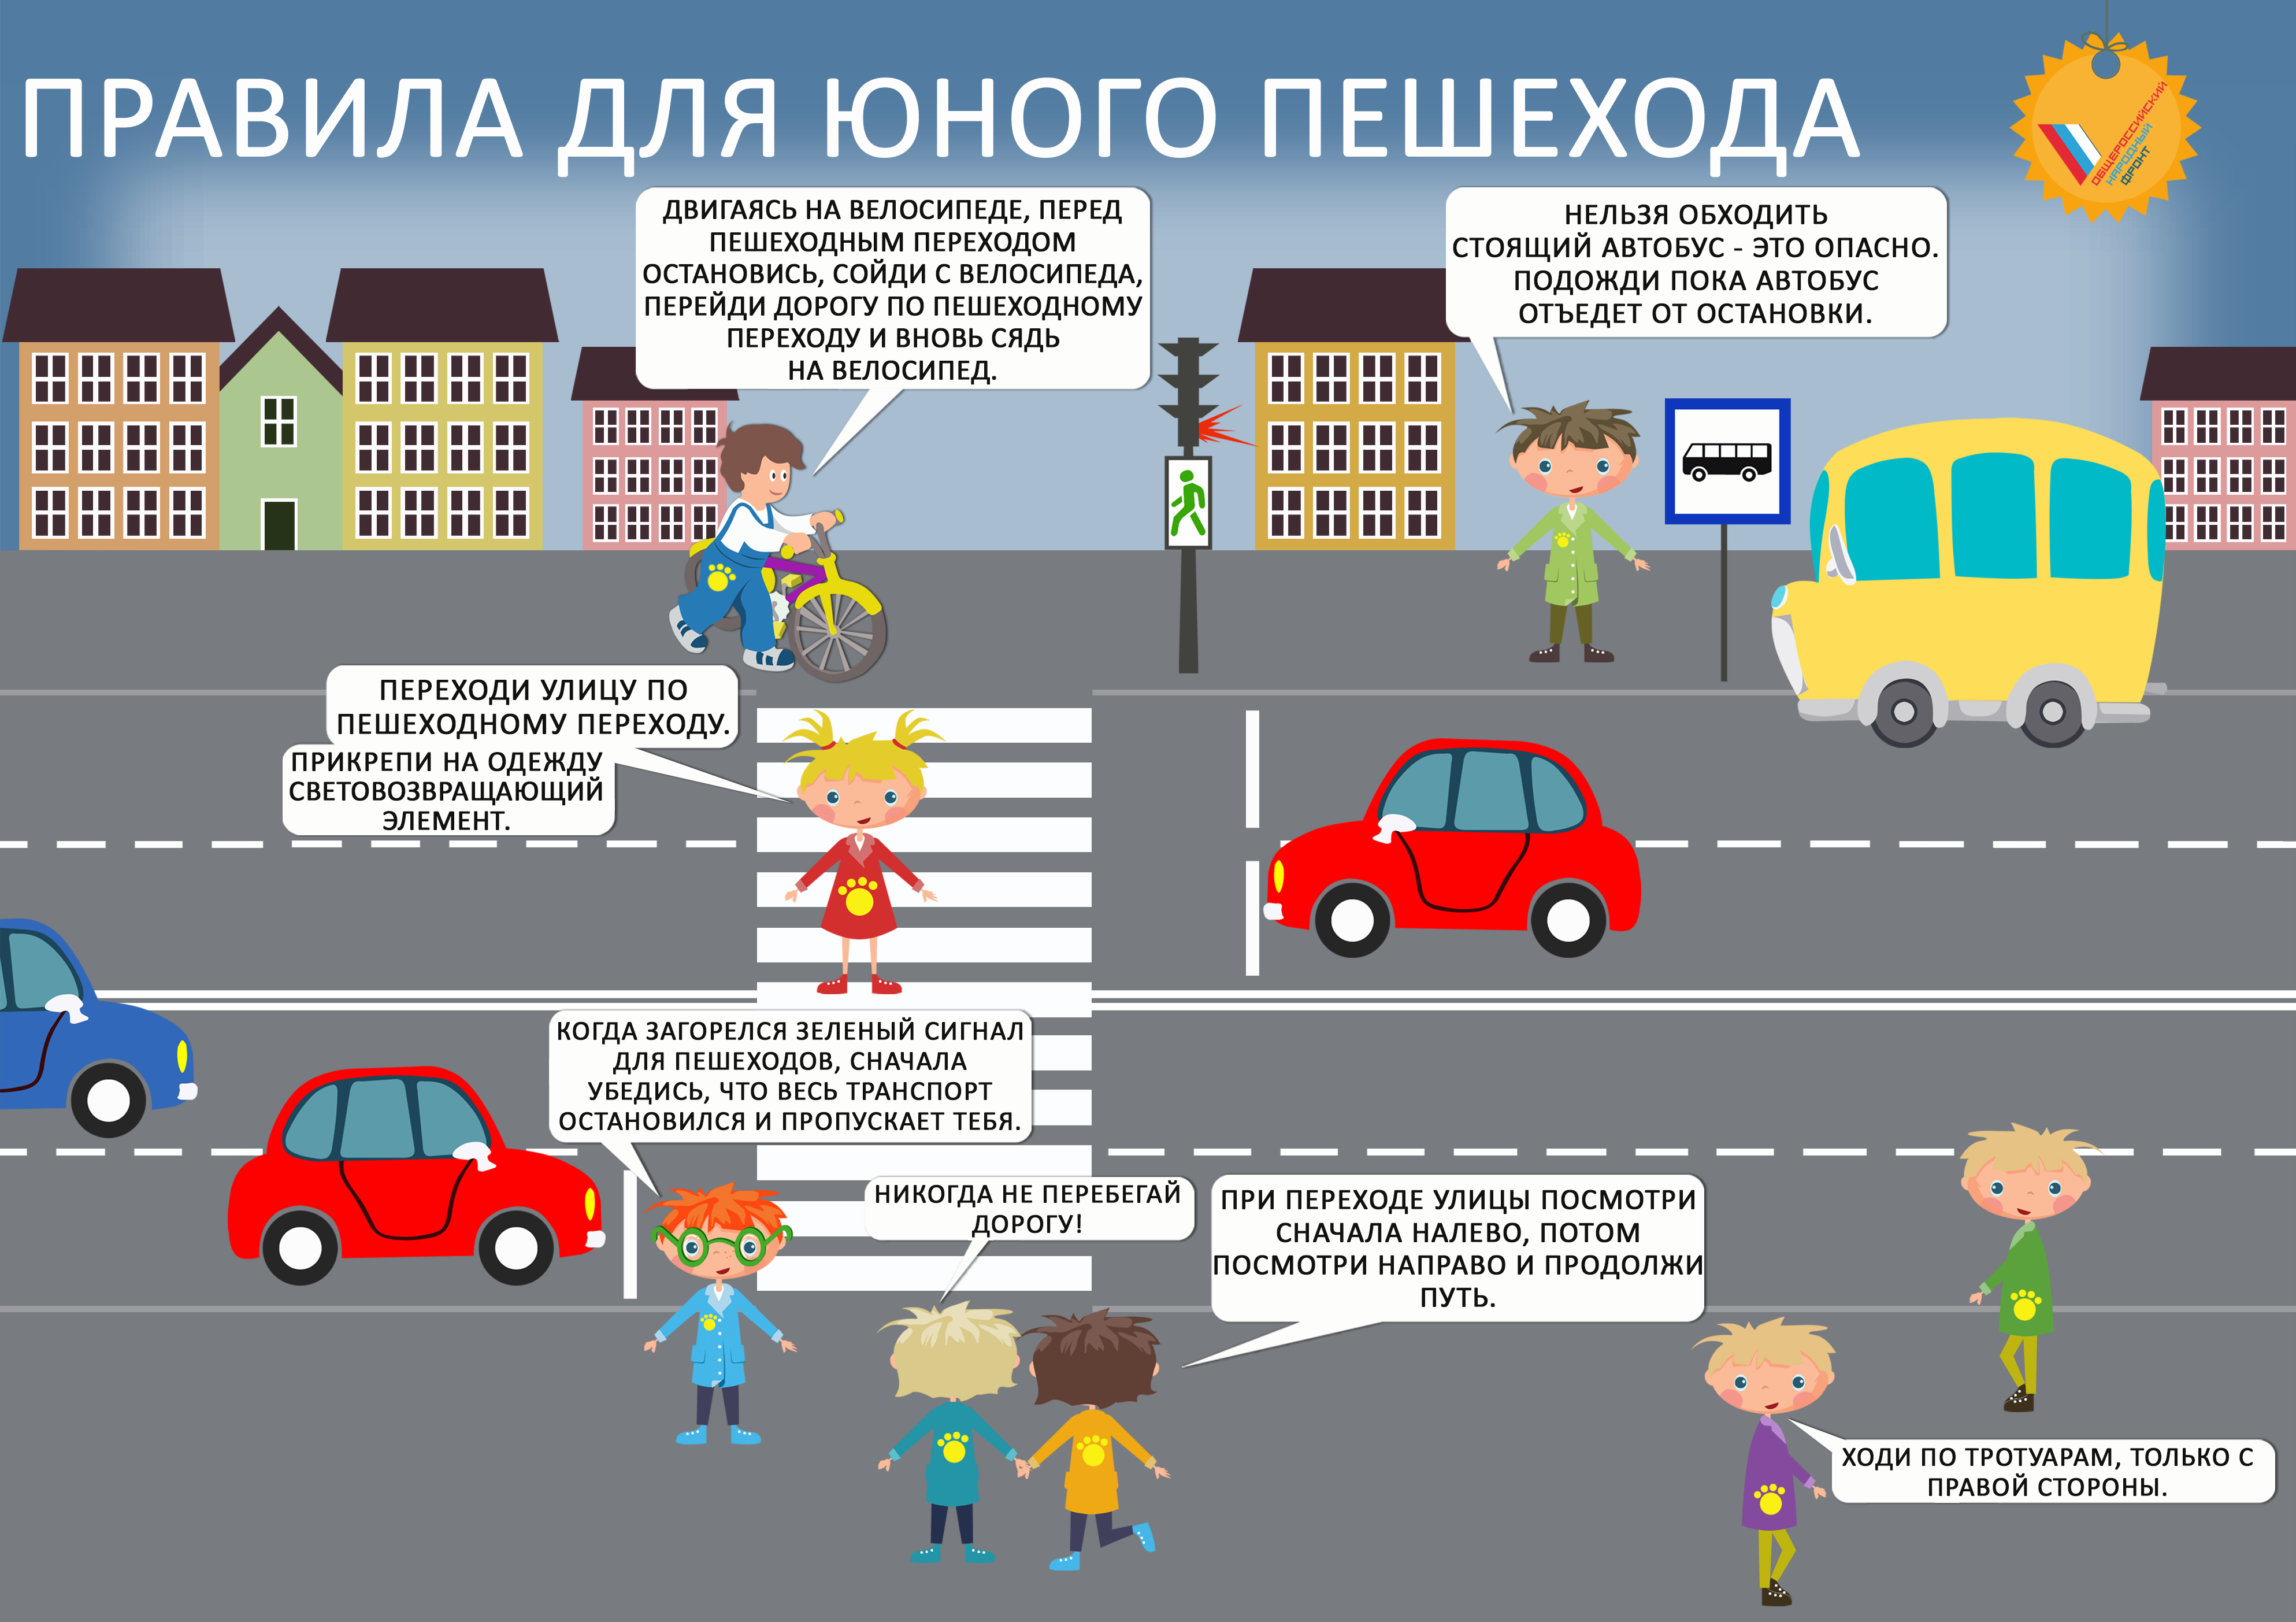 Тест личная безопасность. Правила дорожного движения для детей. Правила дорожного движения для пешеходов. Правила дорожного движения для пешеходов для детей. ПДД картинки для детей.